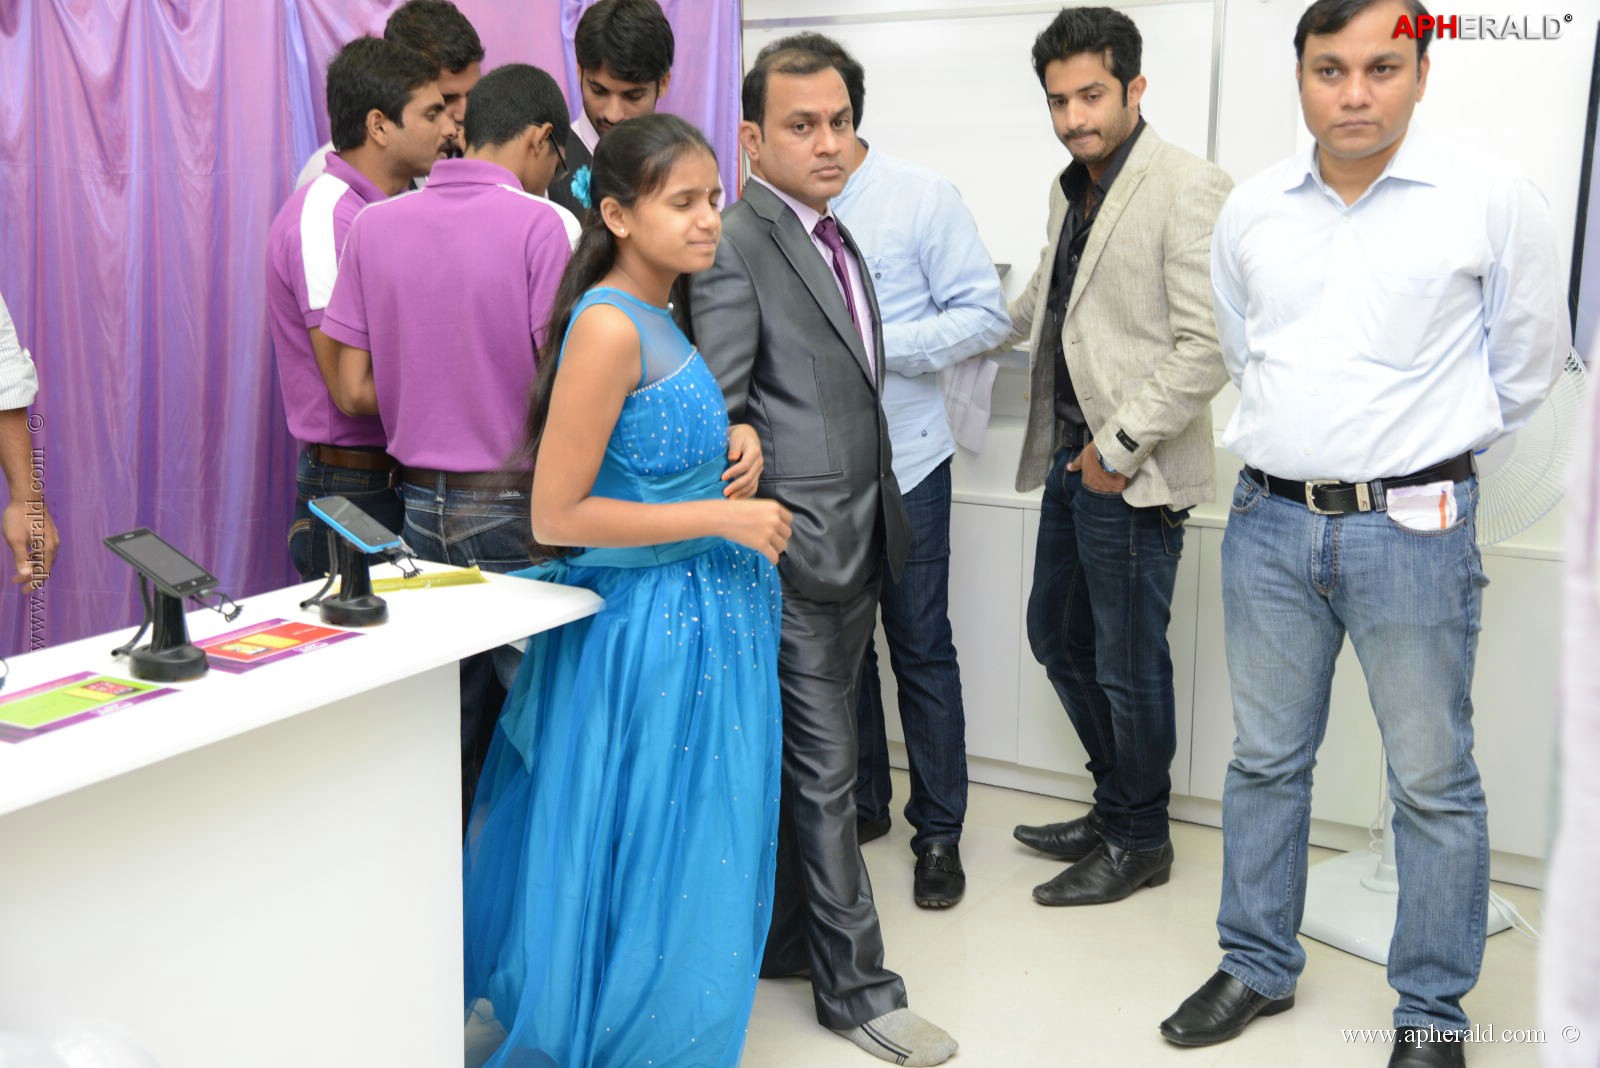 Allu Arjun at Lot Mobile Shop Opening